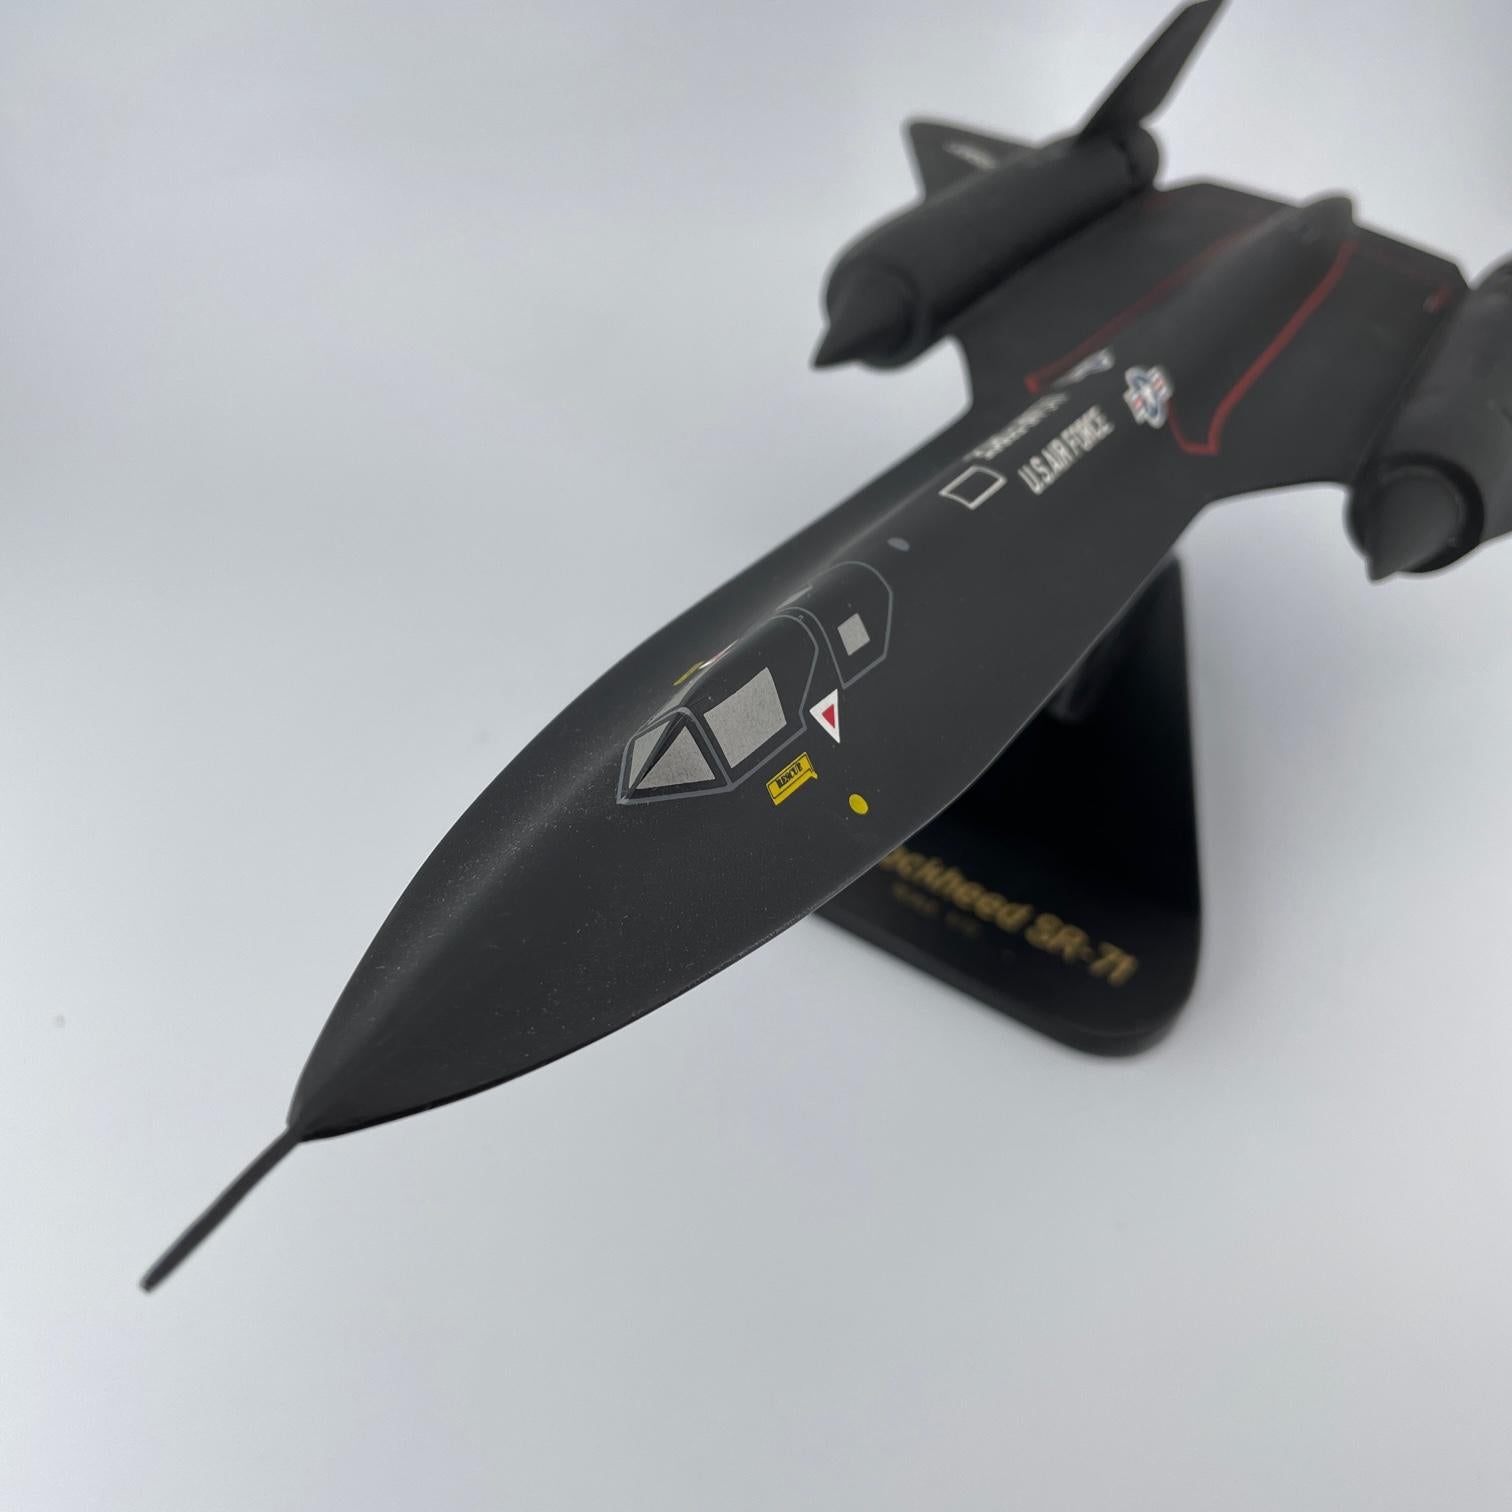 Ein Vintage-Modell im Maßstab 1:72 aus den 1980er Jahren des damals schnellsten Flugzeugs der Welt, der SR-71 Blackbird. Dieses Modell ist 18 Zoll lang und steht auf einem Holzsockel.